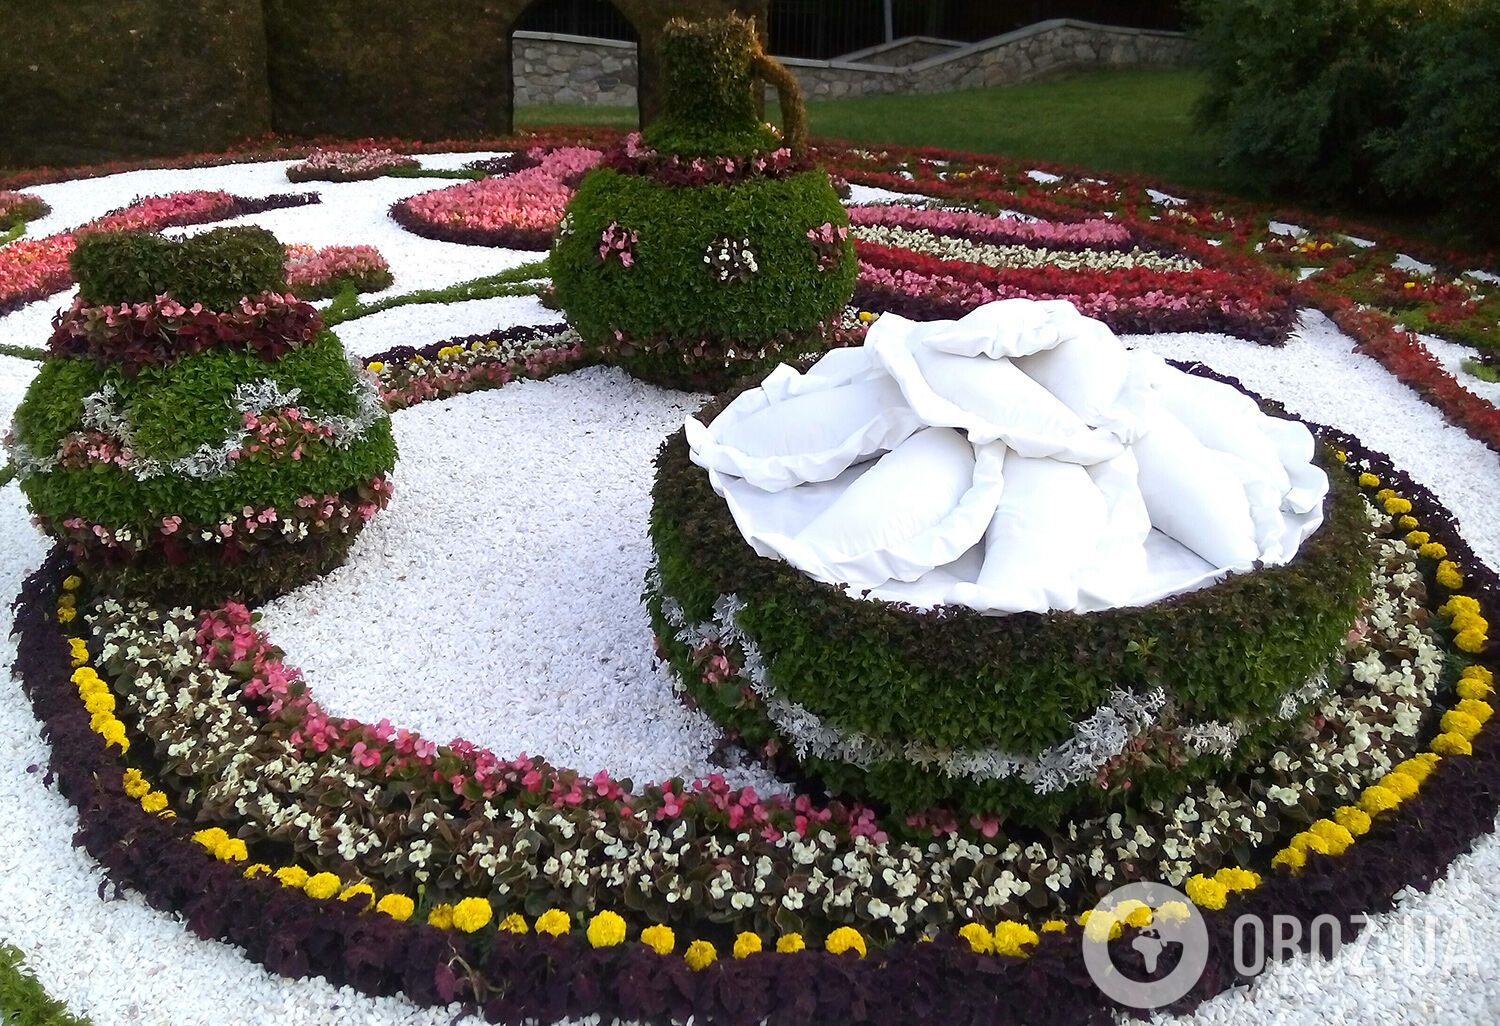 Выставка цветов в Киеве: тарелка борща и гигантские вареники